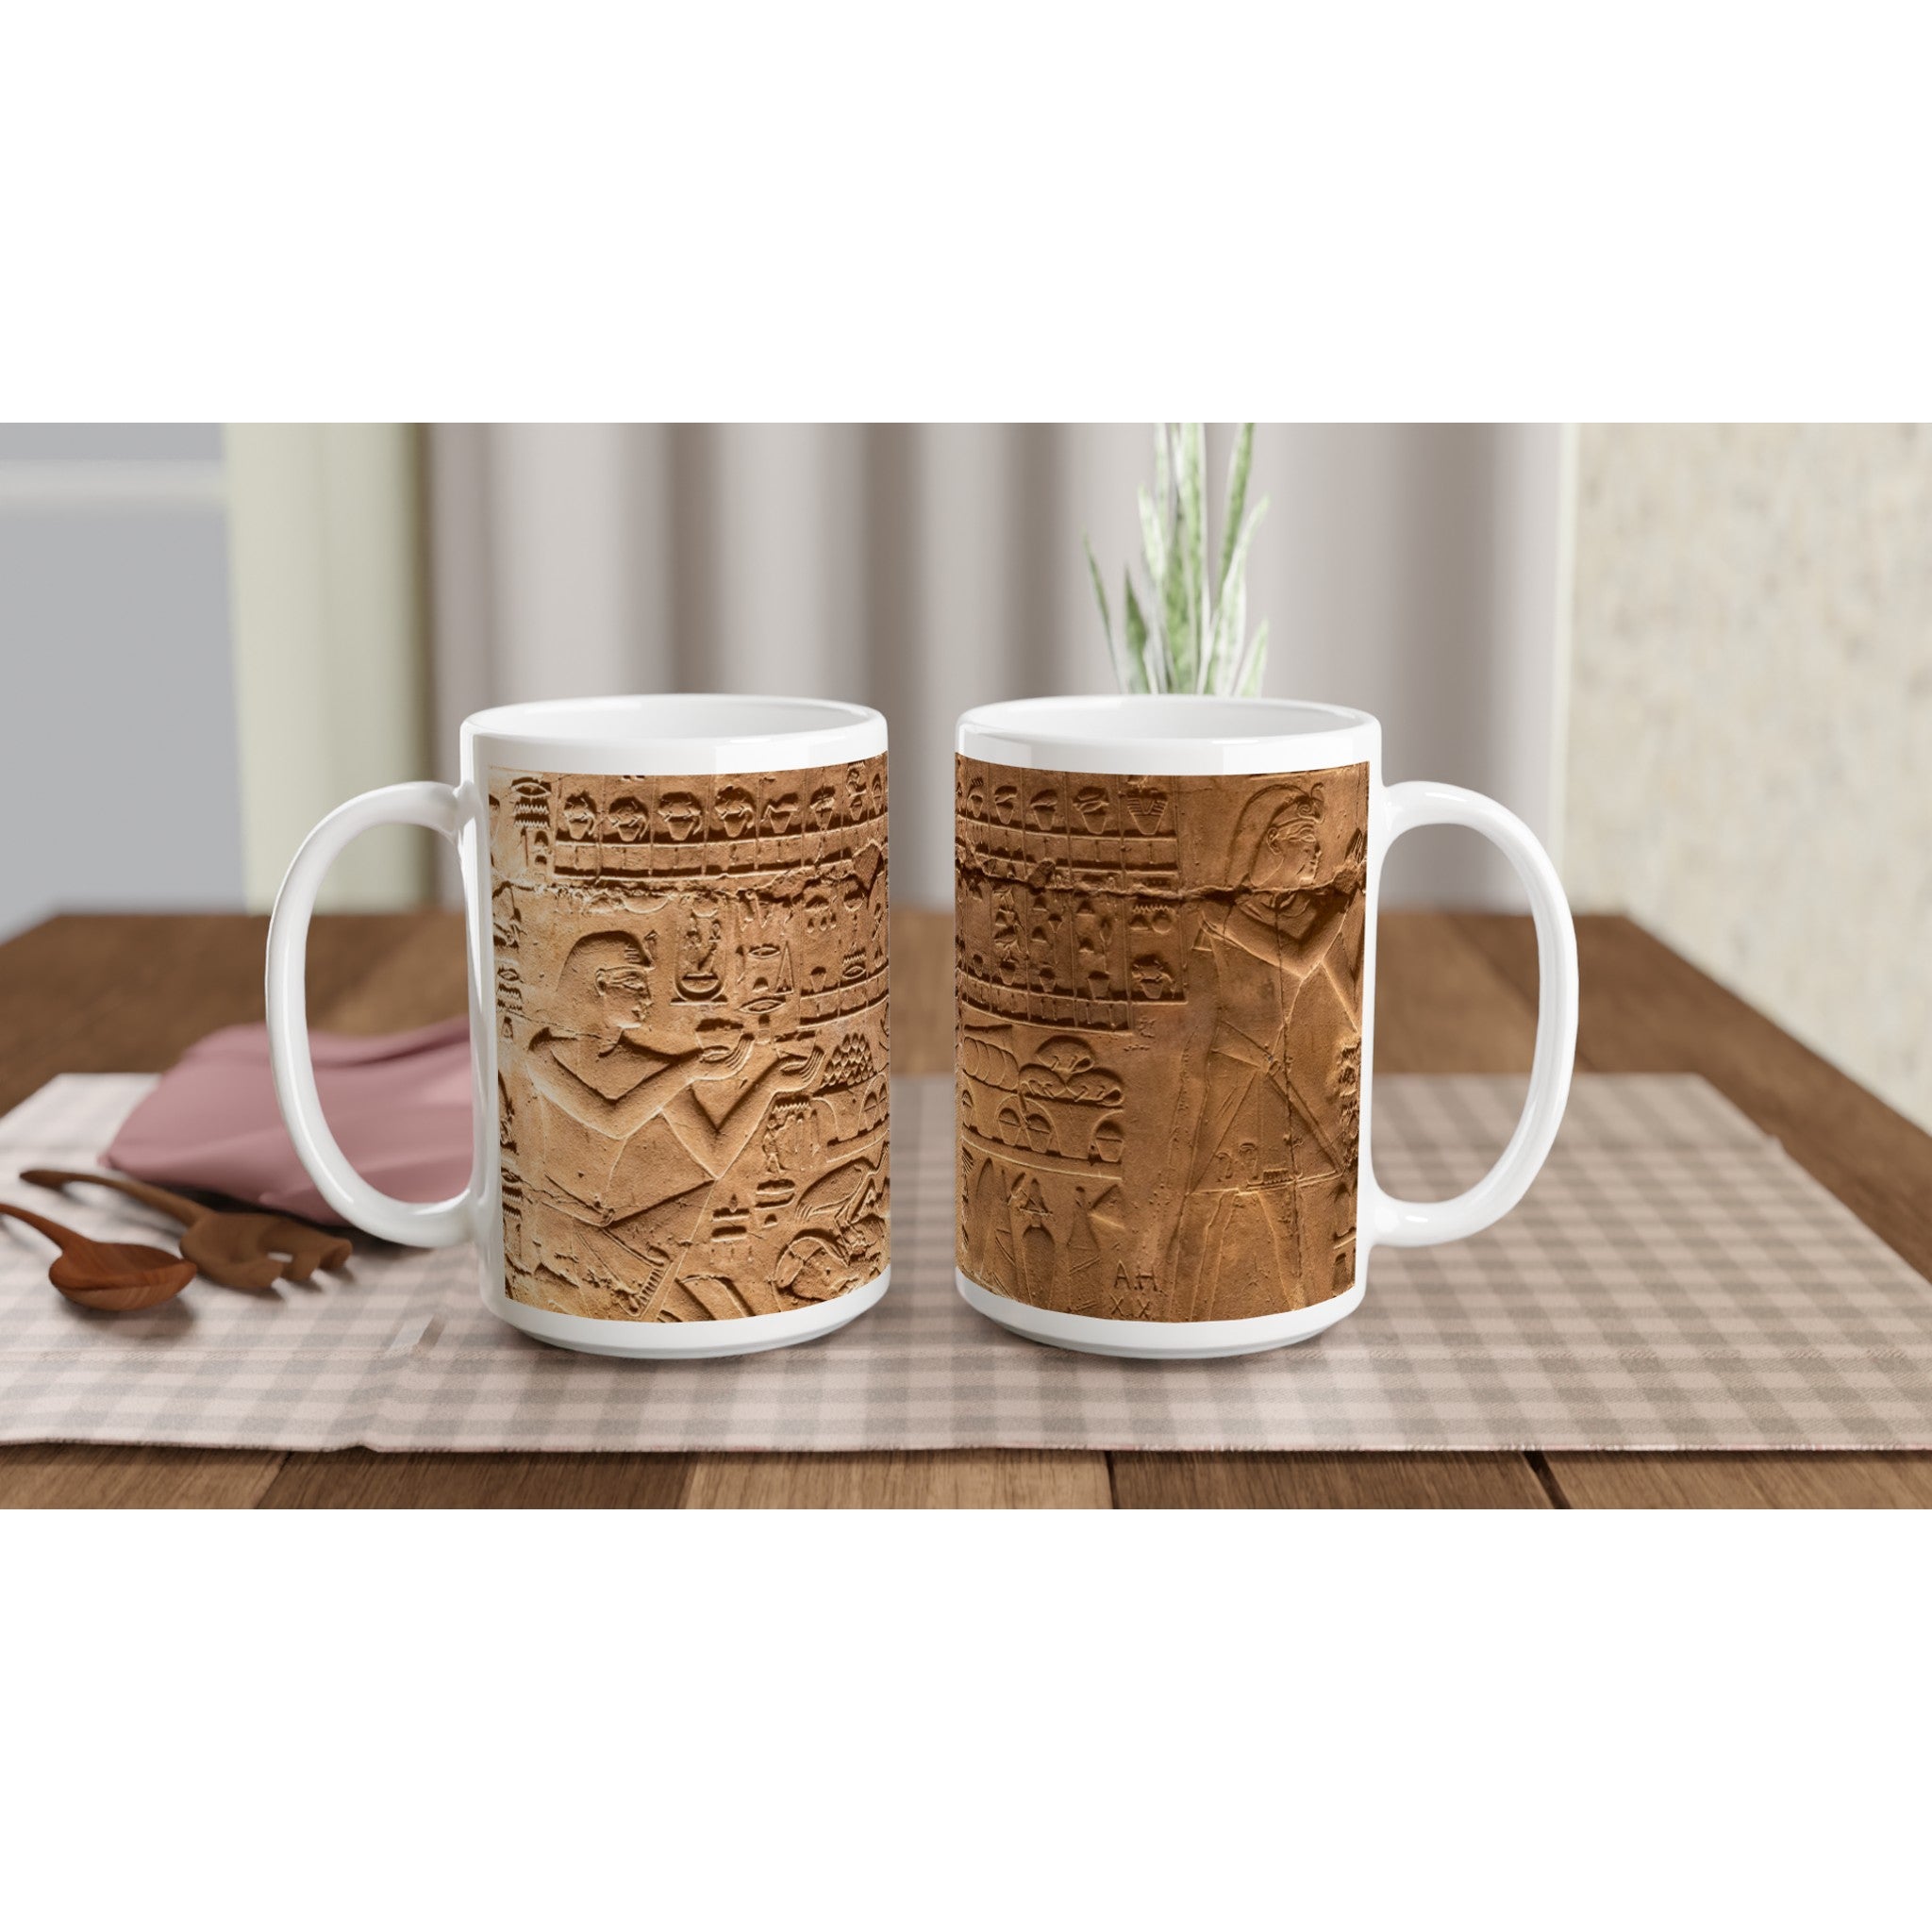 Pharaoh Mug - White 15oz Ceramic Mug